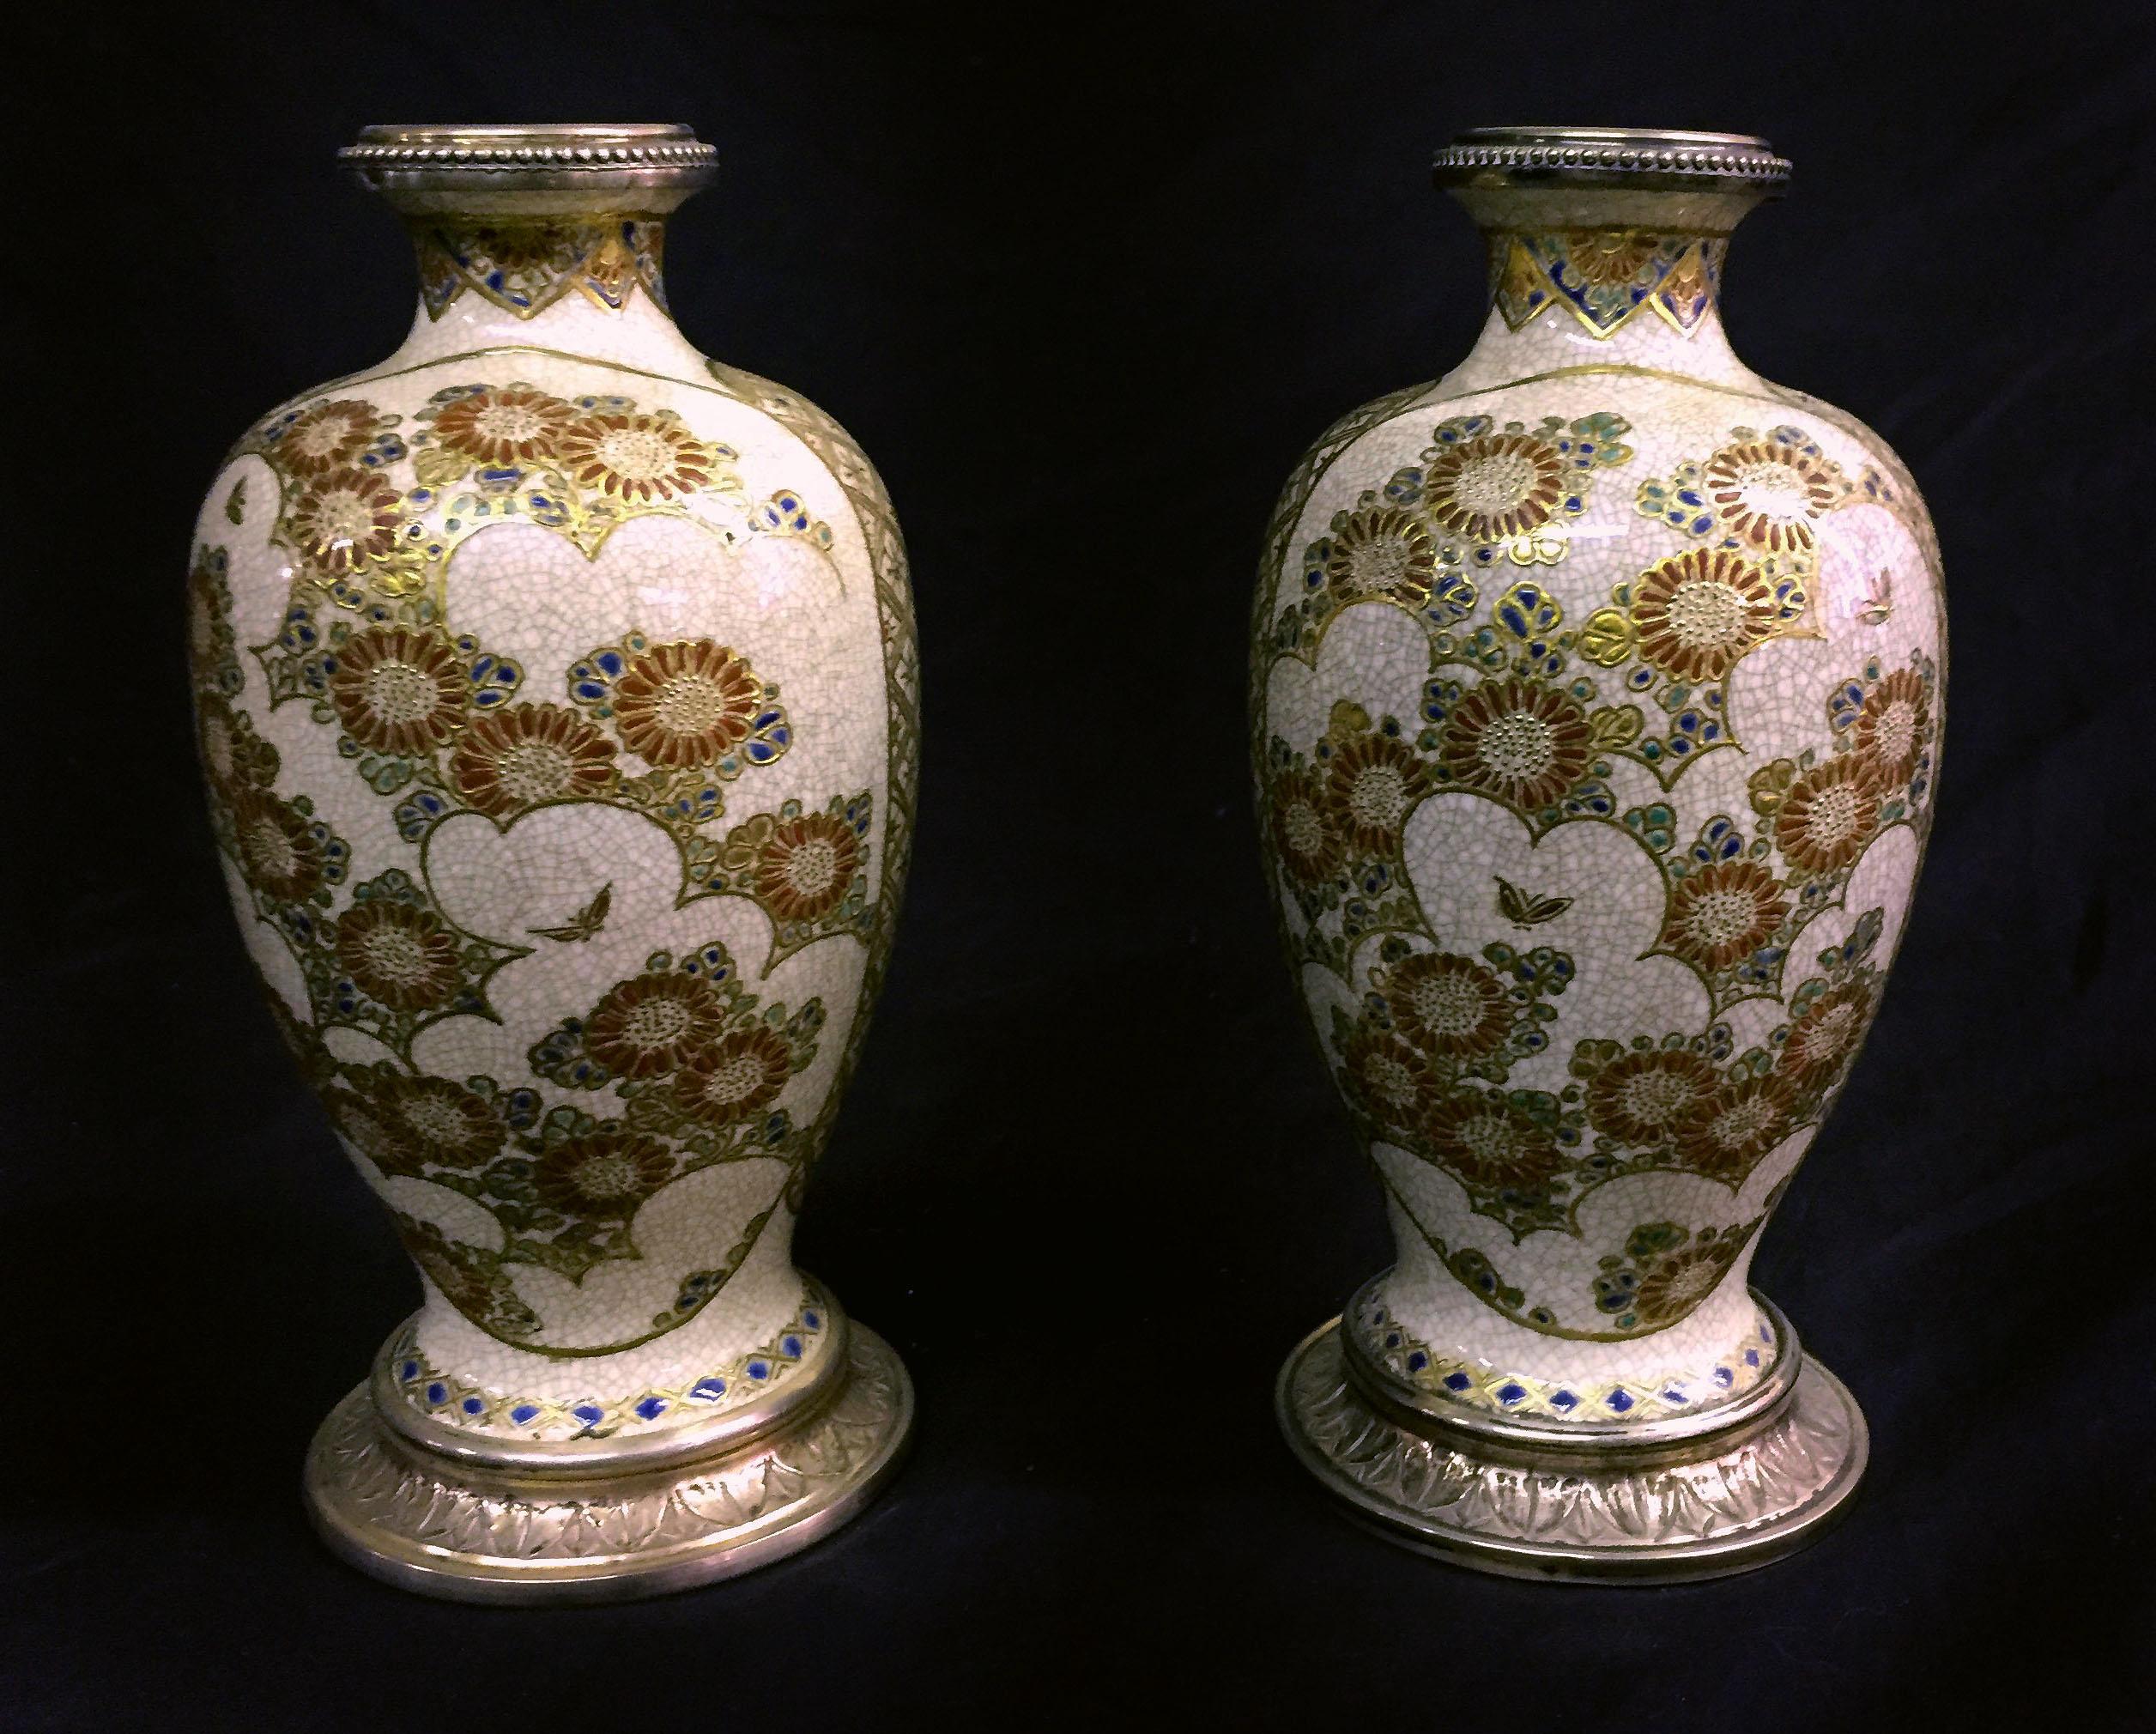 Ein schönes Paar japanischer Satsuma-Porzellanvasen mit Silbermontierung aus dem späten 19

Die Vorderseiten sind mit löwenartigen Figuren bemalt, die Rückseiten mit Blumen und Schmetterlingen, die gesamte Vase mit erhabenen Golddekoren.